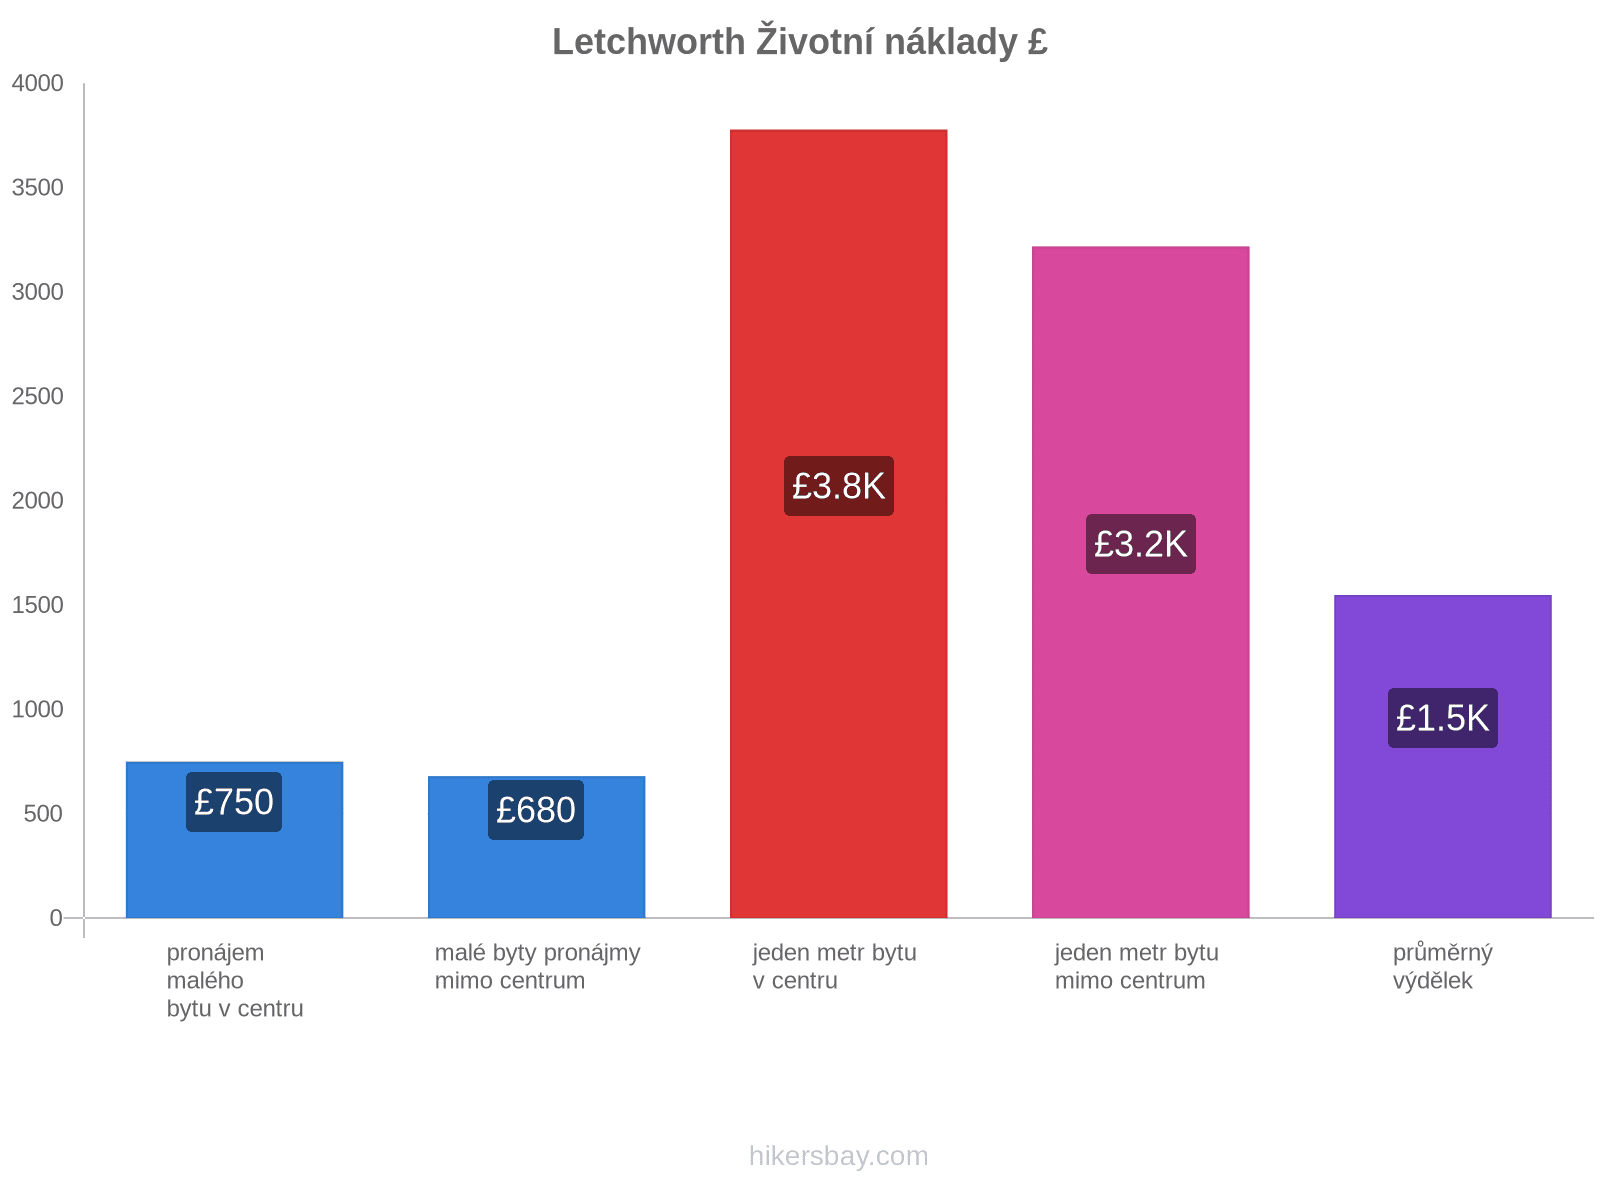 Letchworth životní náklady hikersbay.com